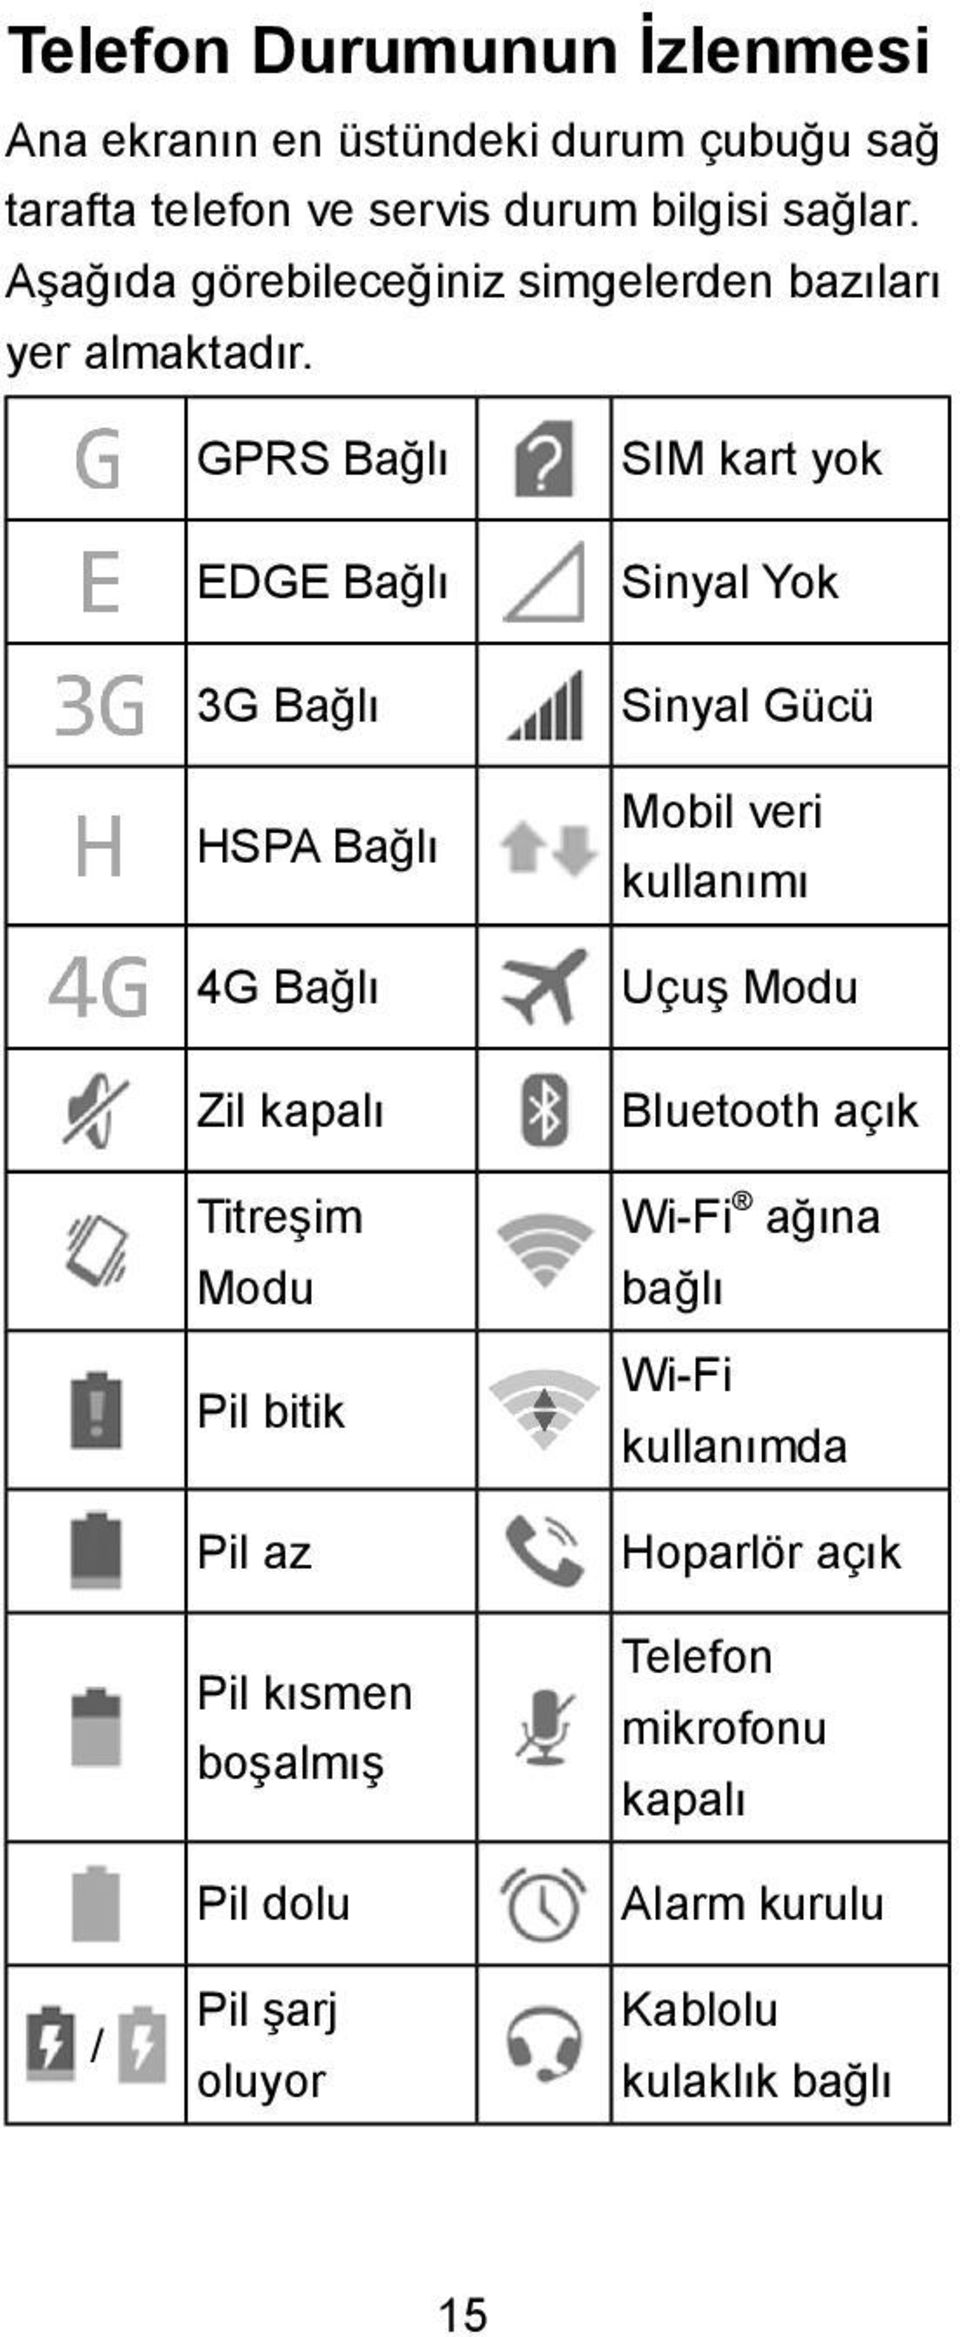 / GPRS Bağlı EDGE Bağlı 3G Bağlı HSPA Bağlı 4G Bağlı Zil kapalı Titreşim Modu Pil bitik Pil az Pil kısmen boşalmış Pil dolu Pil